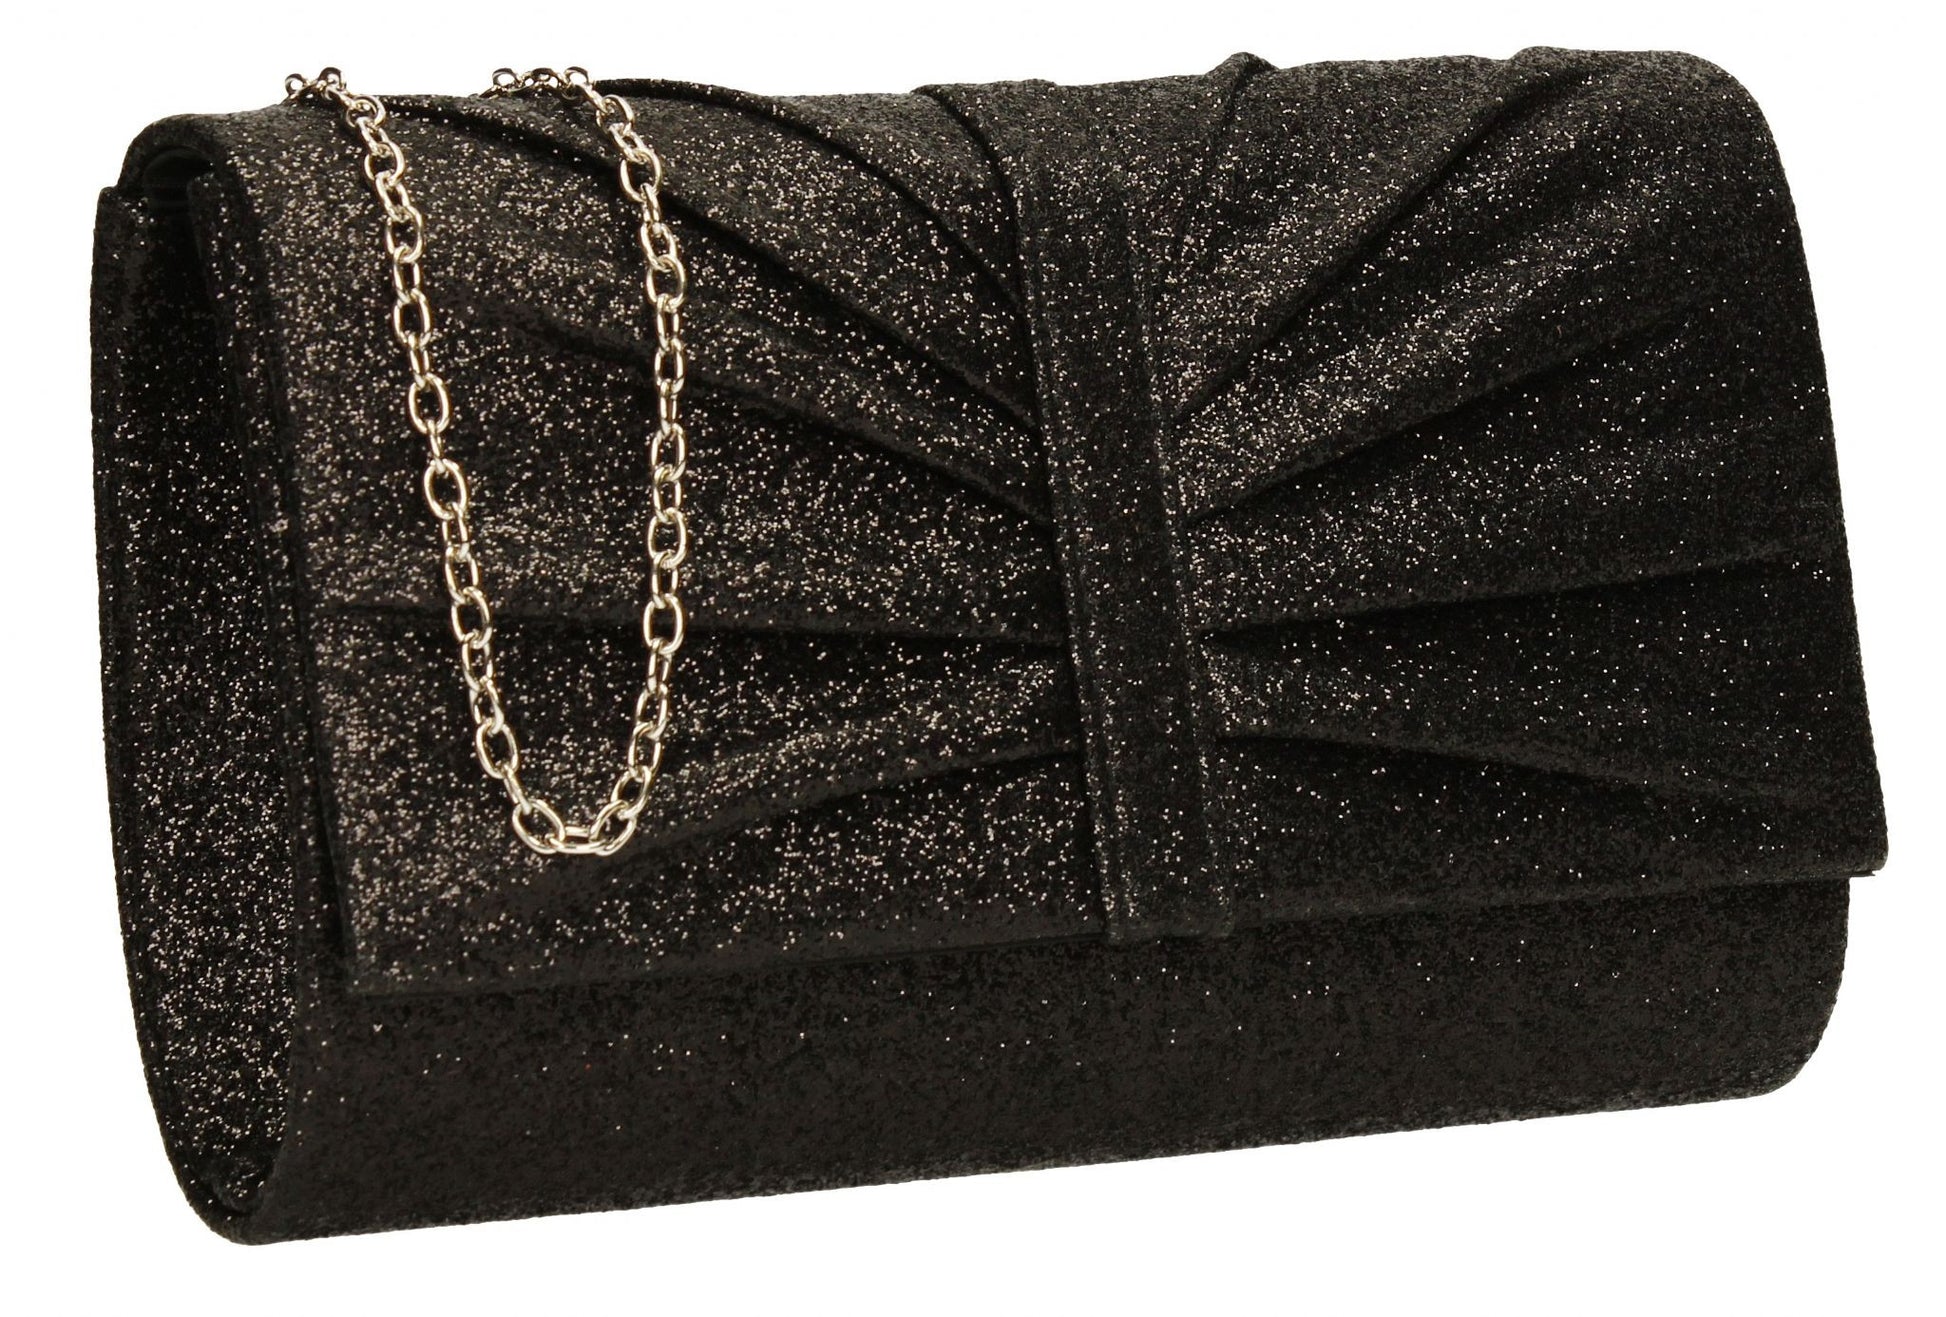 SWANKYSWANS Serafina Clutch Bag Black Cute Cheap Clutch Bag For Weddings School and Work